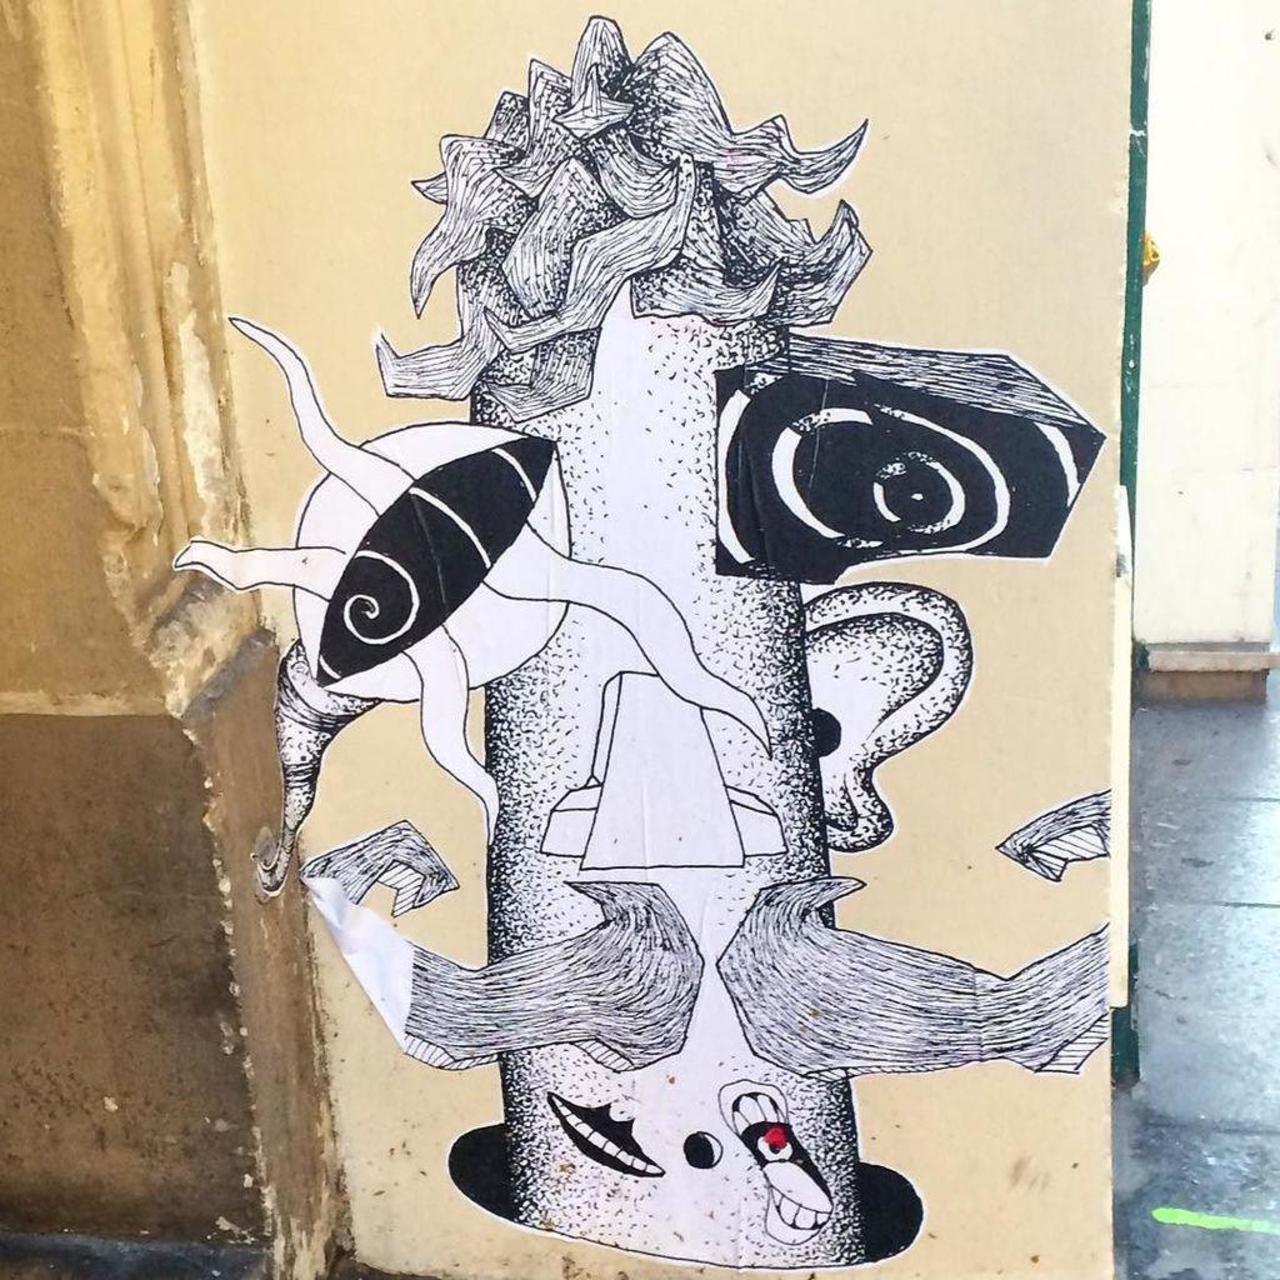 RT @StArtEverywhere: #streetart #streetartparis #parisstreetart #graffiti #collage #urbanart by benapix http://t.co/d9xmTqcUxq